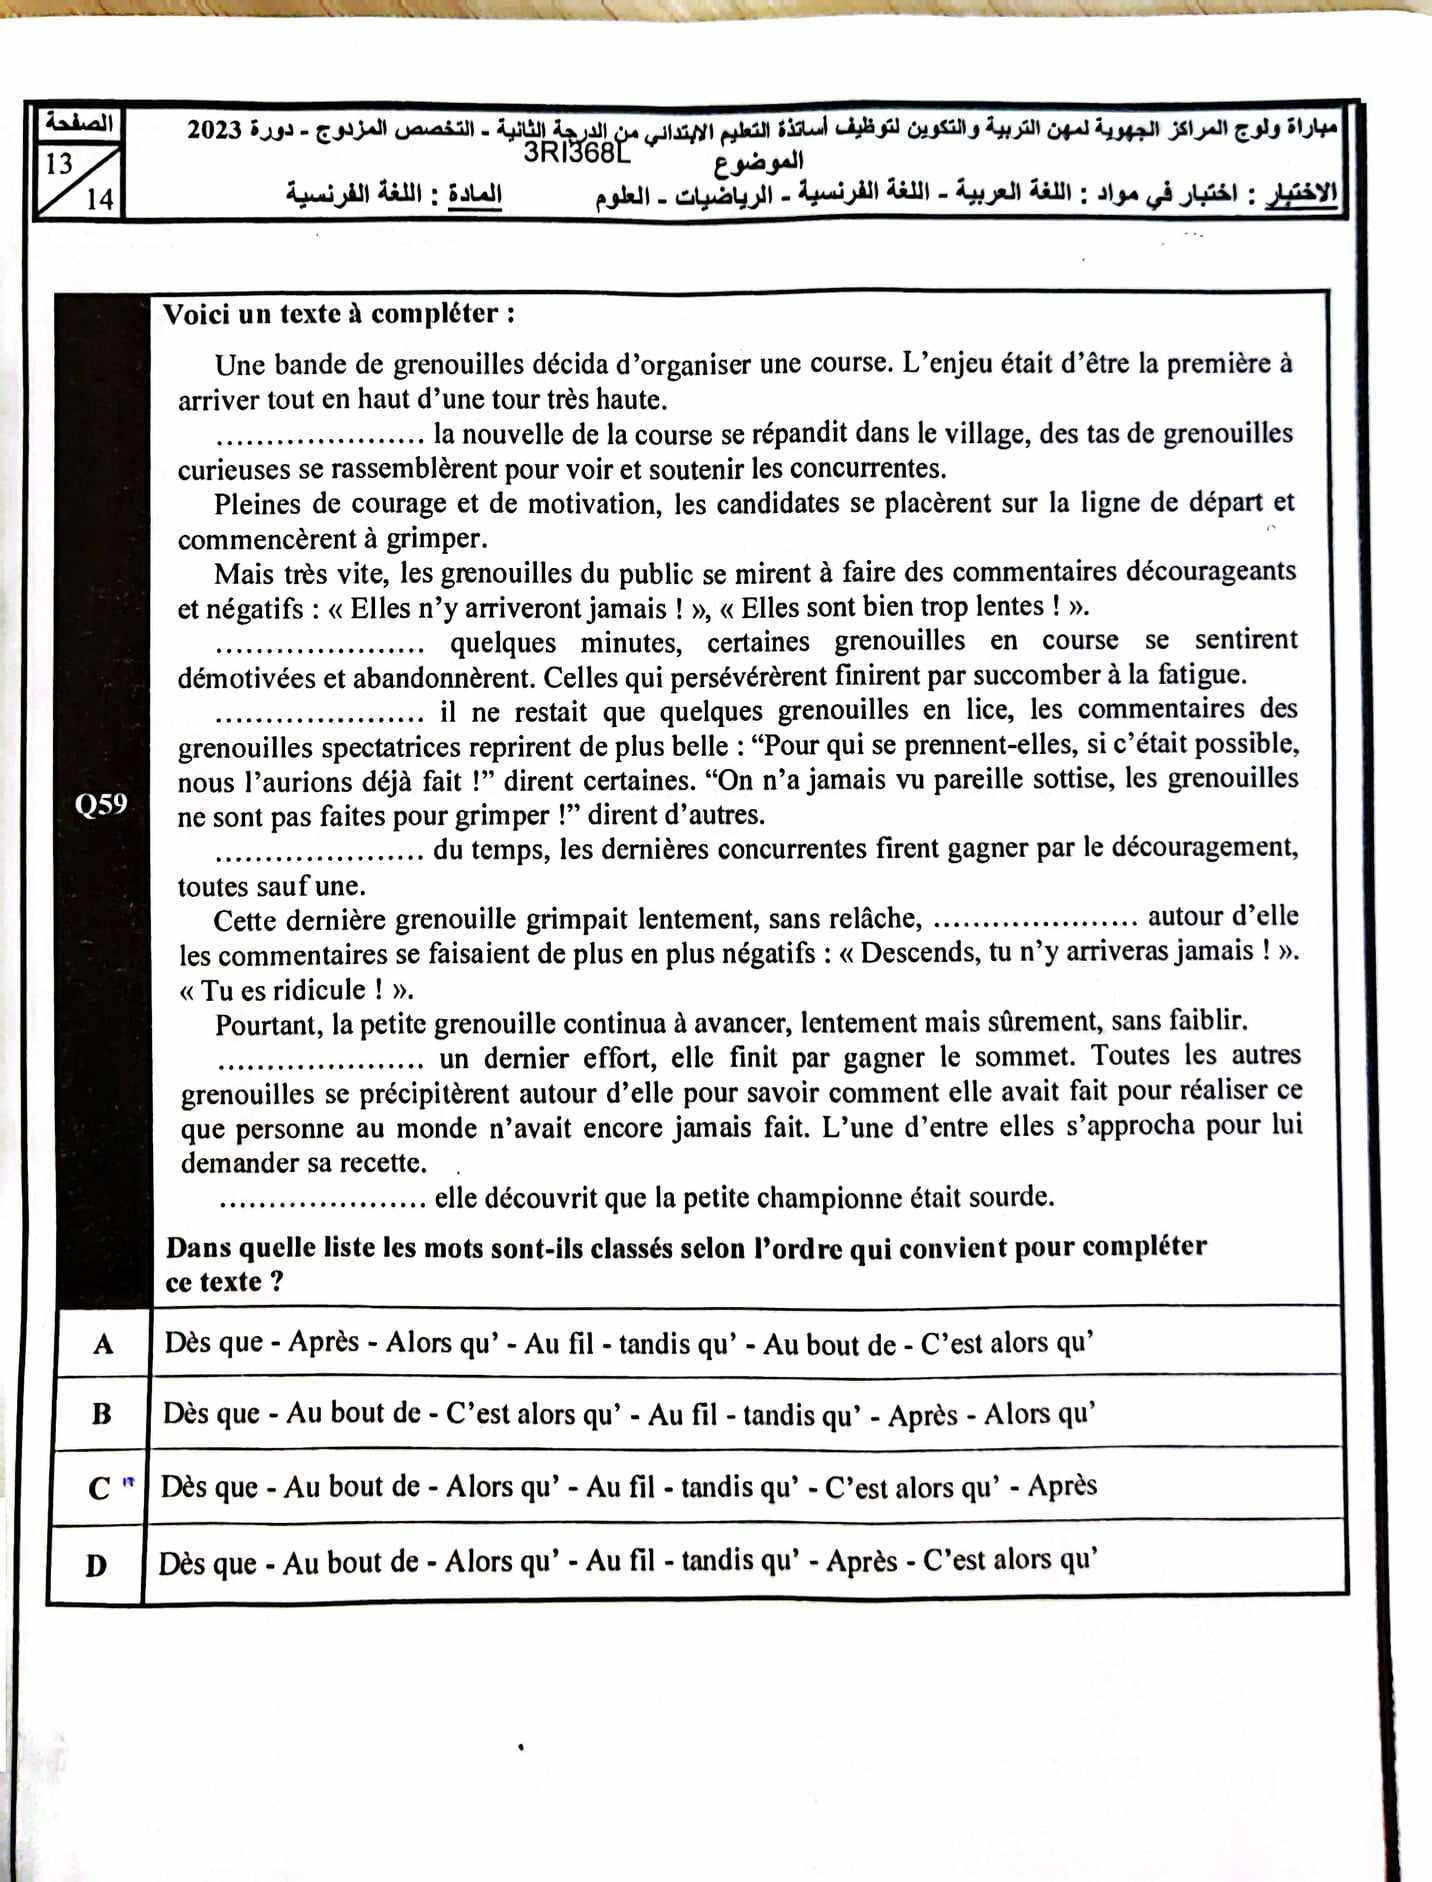 امتحان مباراة التعليم مادة اللغة الفرنسية تخصص مزدوج الابتدائي 2023